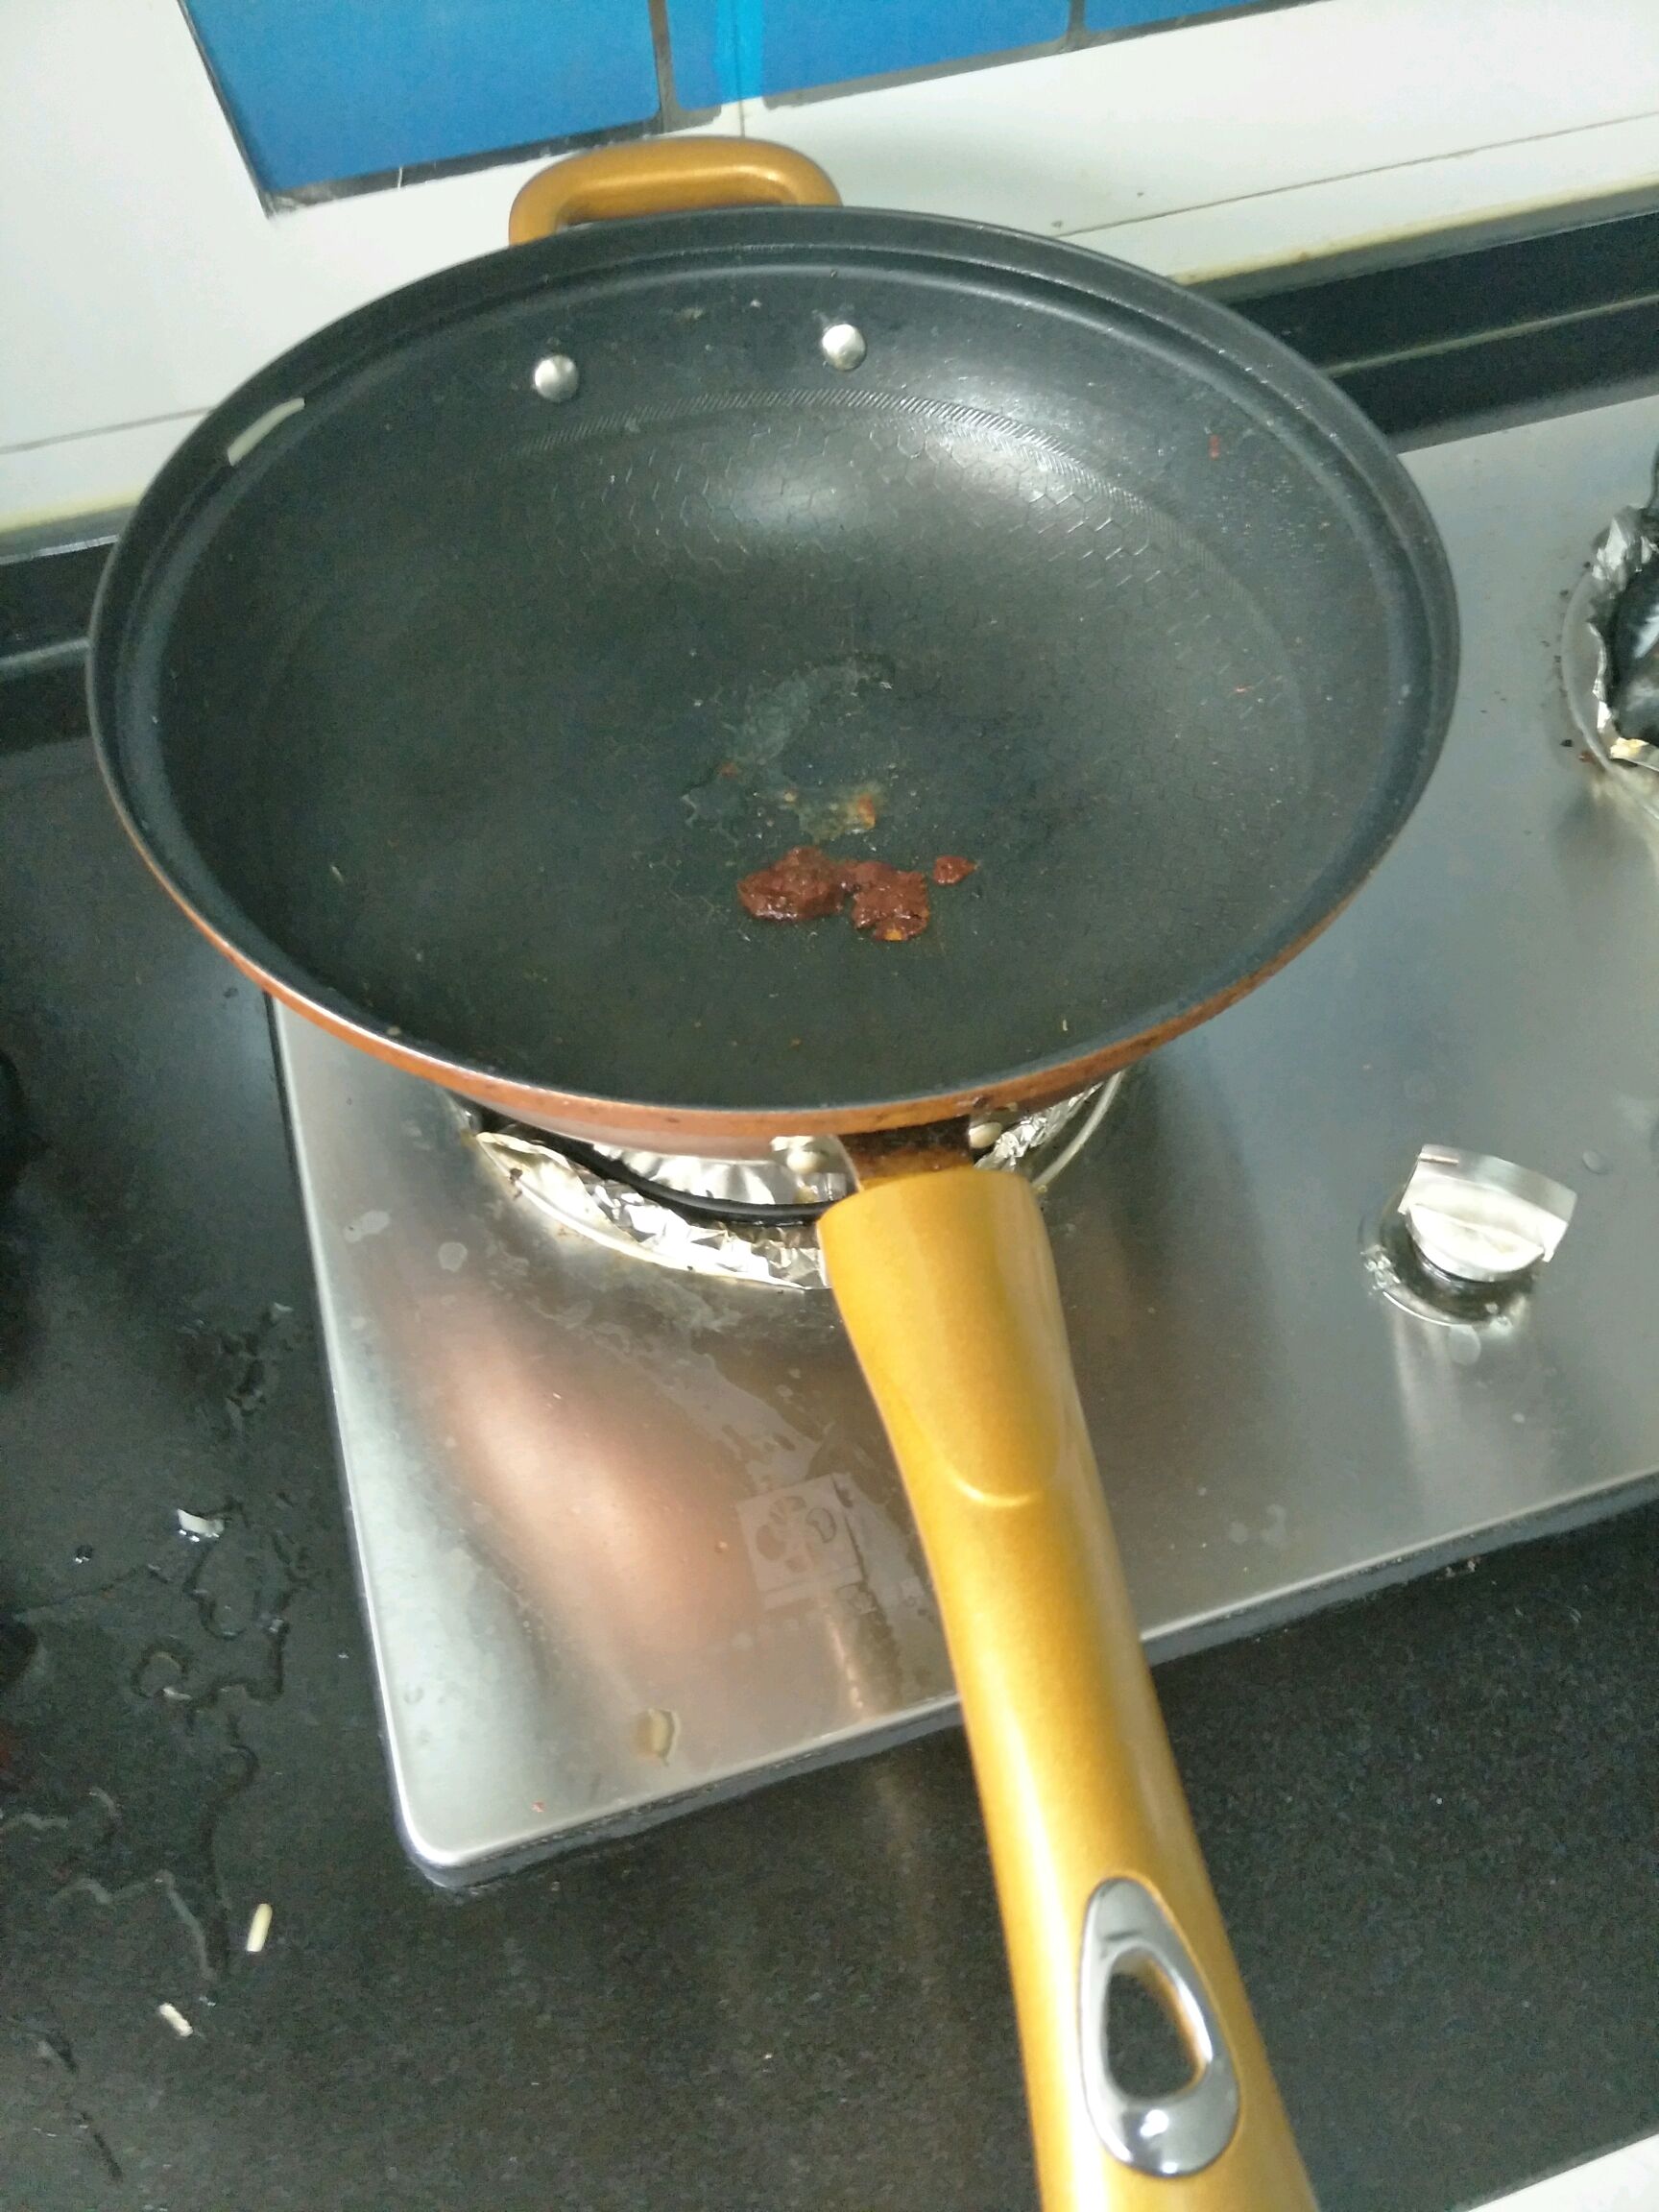 锅加热倒油,加点红油豆瓣搅拌,再加入海带丝翻炒,加适量盐,少量鸡精